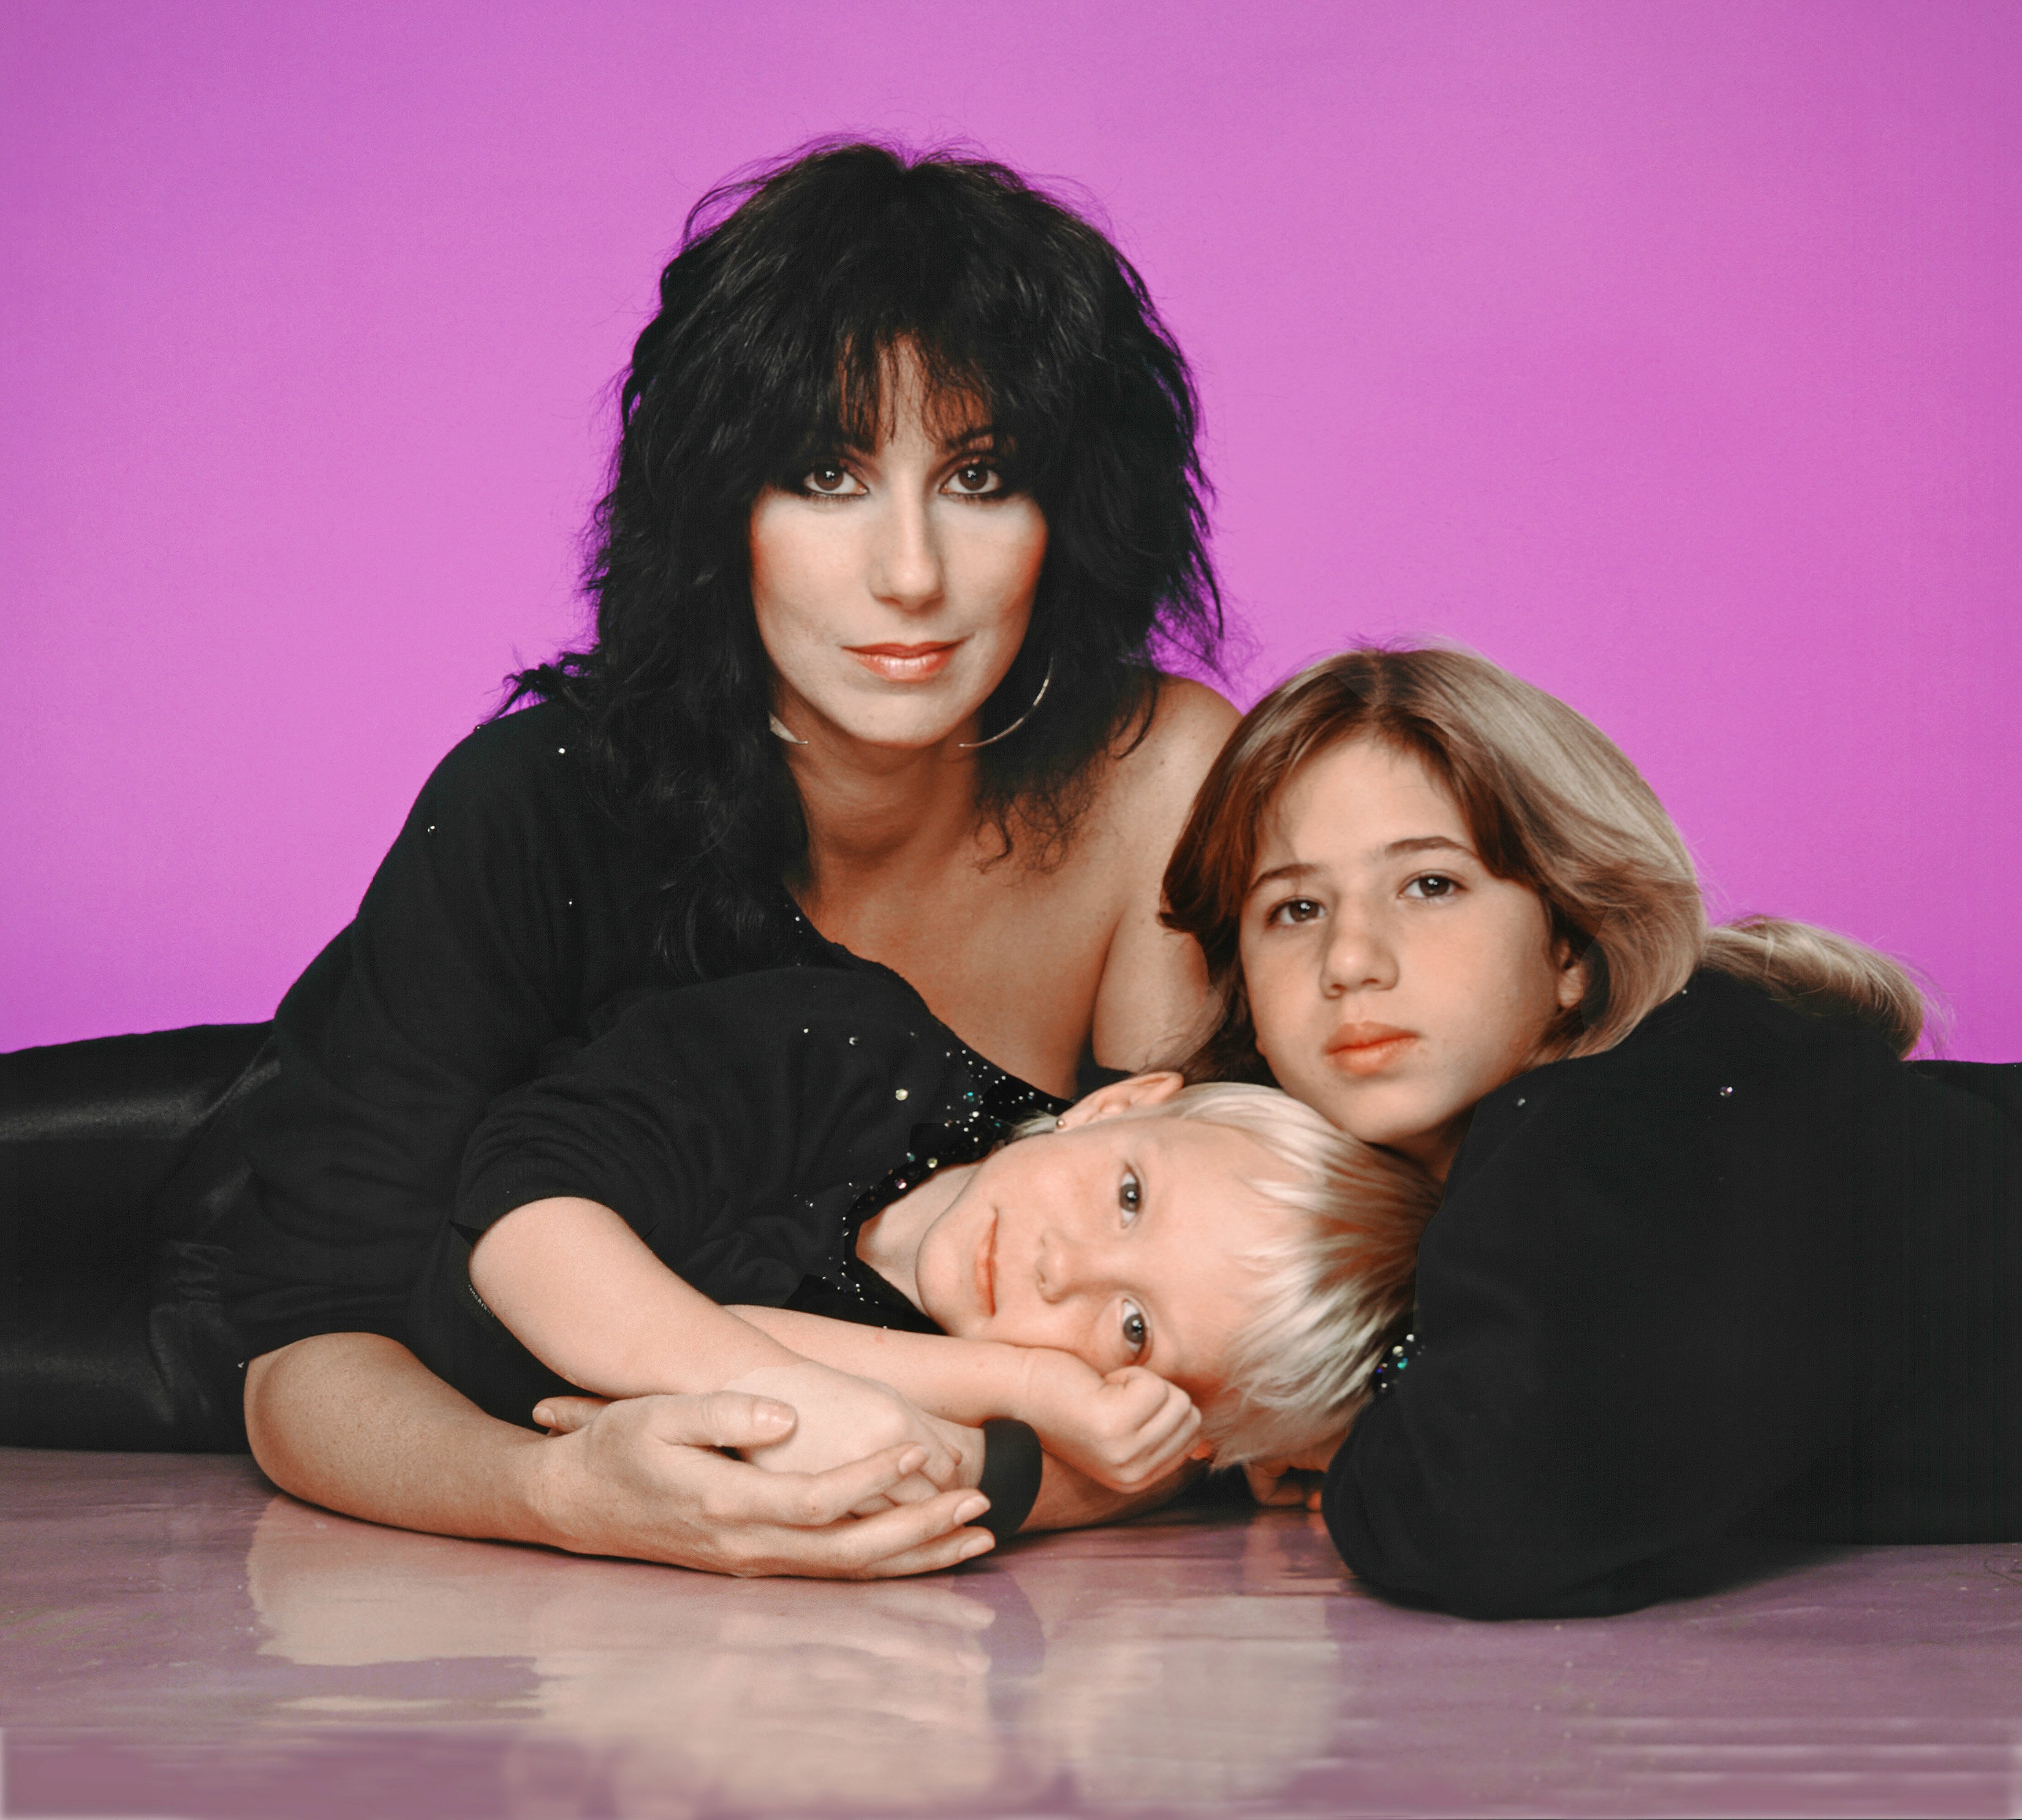 Cher mit ihren Kindern Chastity Bono und Elijah Allman am 1. Januar 1980 in Los Angeles, Kalifornien | Quelle: Getty Images